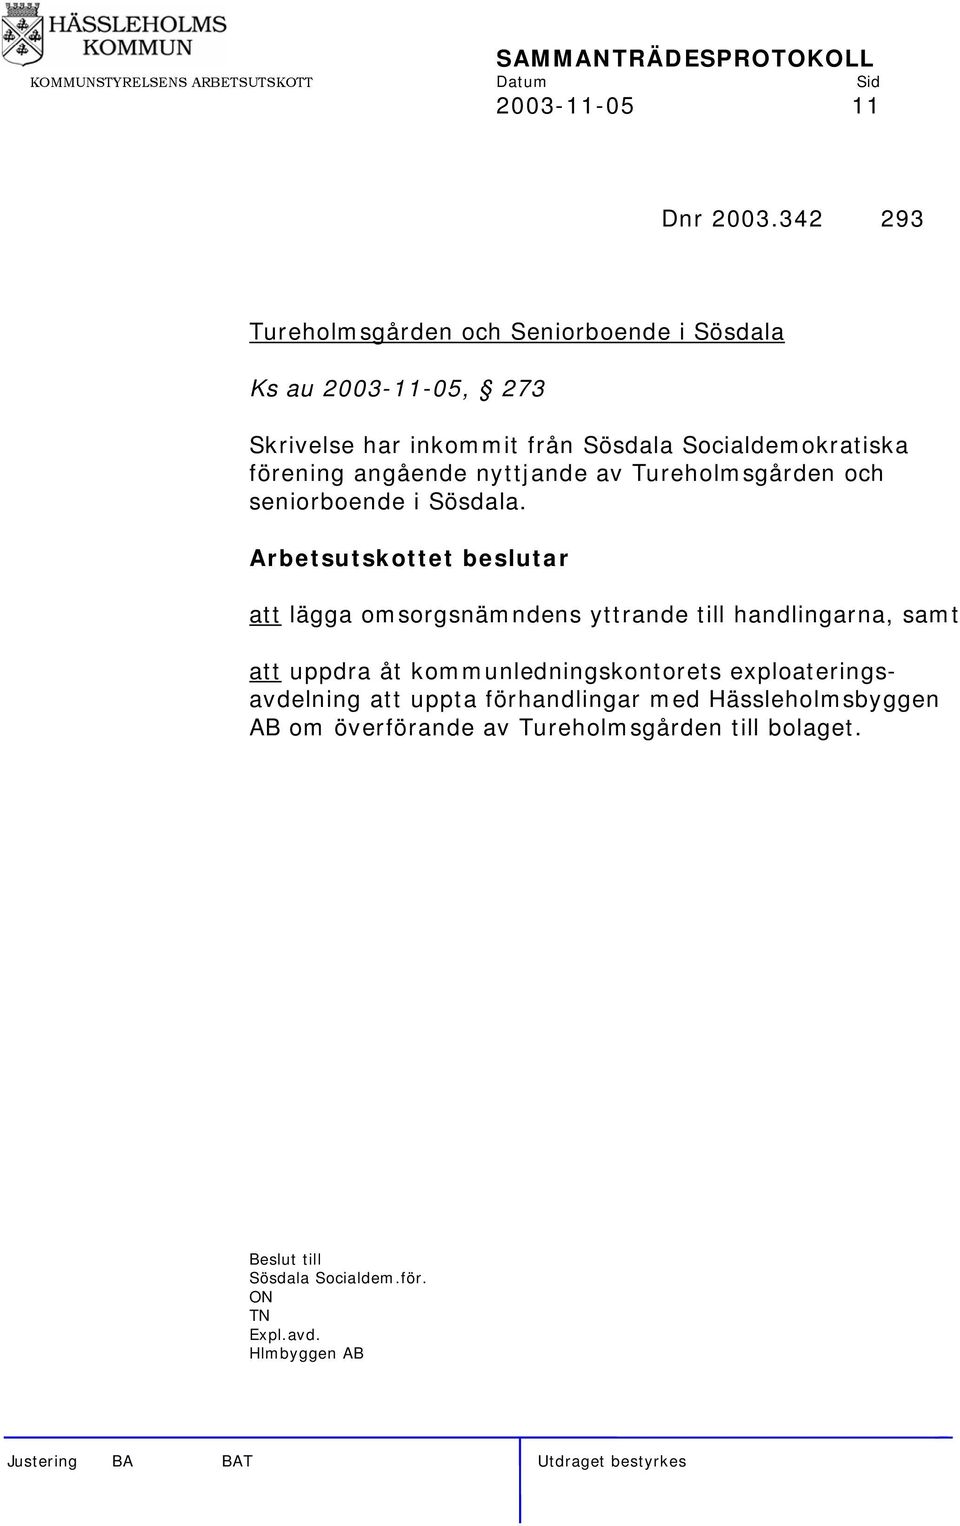 Socialdemokratiska förening angående nyttjande av Tureholmsgården och seniorboende i Sösdala.